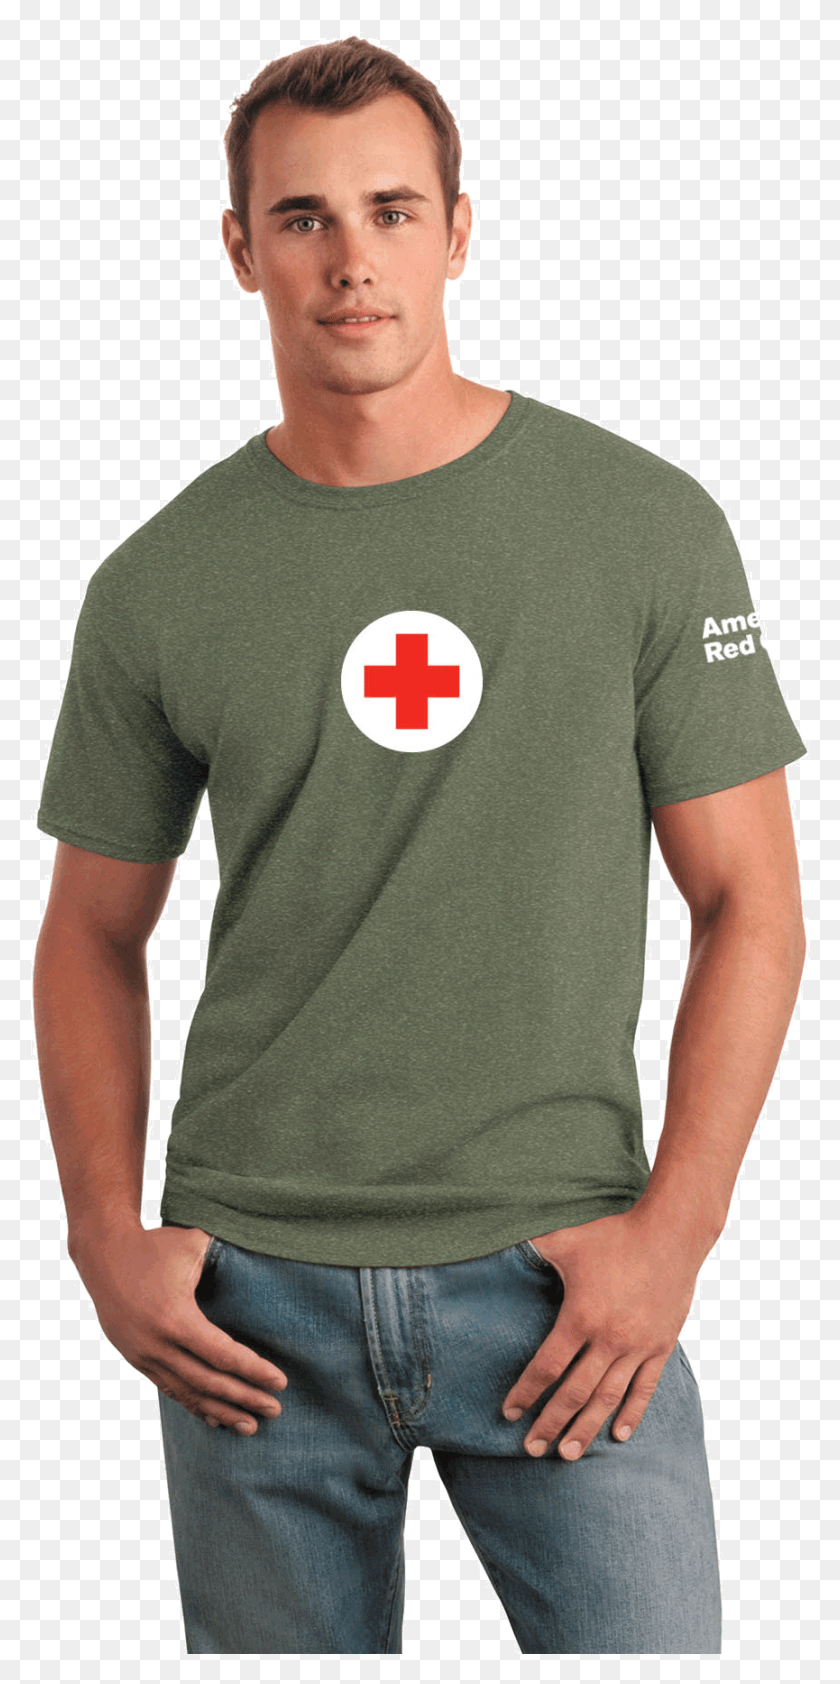 865x1801 Descargar Png Camiseta Clásica Unisex De Algodón 100 Con Rojo Americano Gildan 64000 Zafiro Antiguo, Primeros Auxilios, Logotipo, Símbolo Hd Png